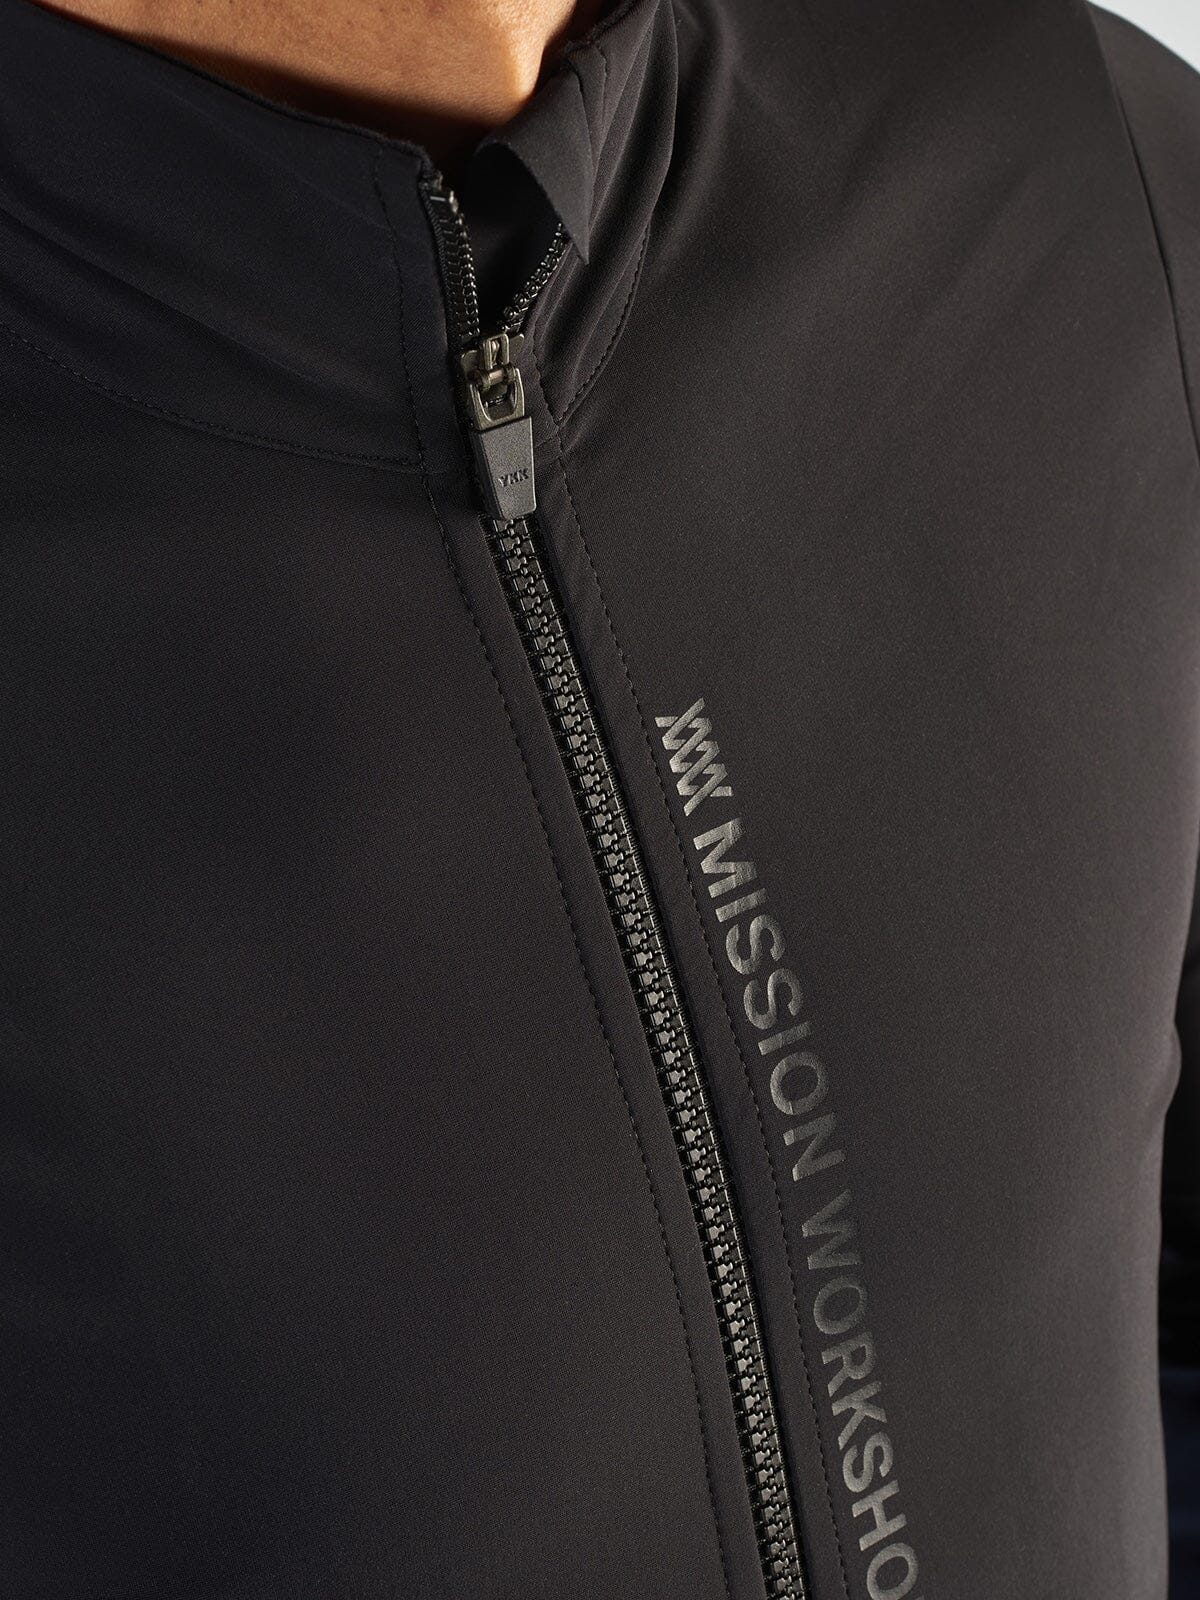 Range Jacket Men's by Mission Workshop - Säänkestävät laukut ja tekniset vaatteet - San Francisco & Los Angeles - Rakennettu kestämään - ikuisesti taattu